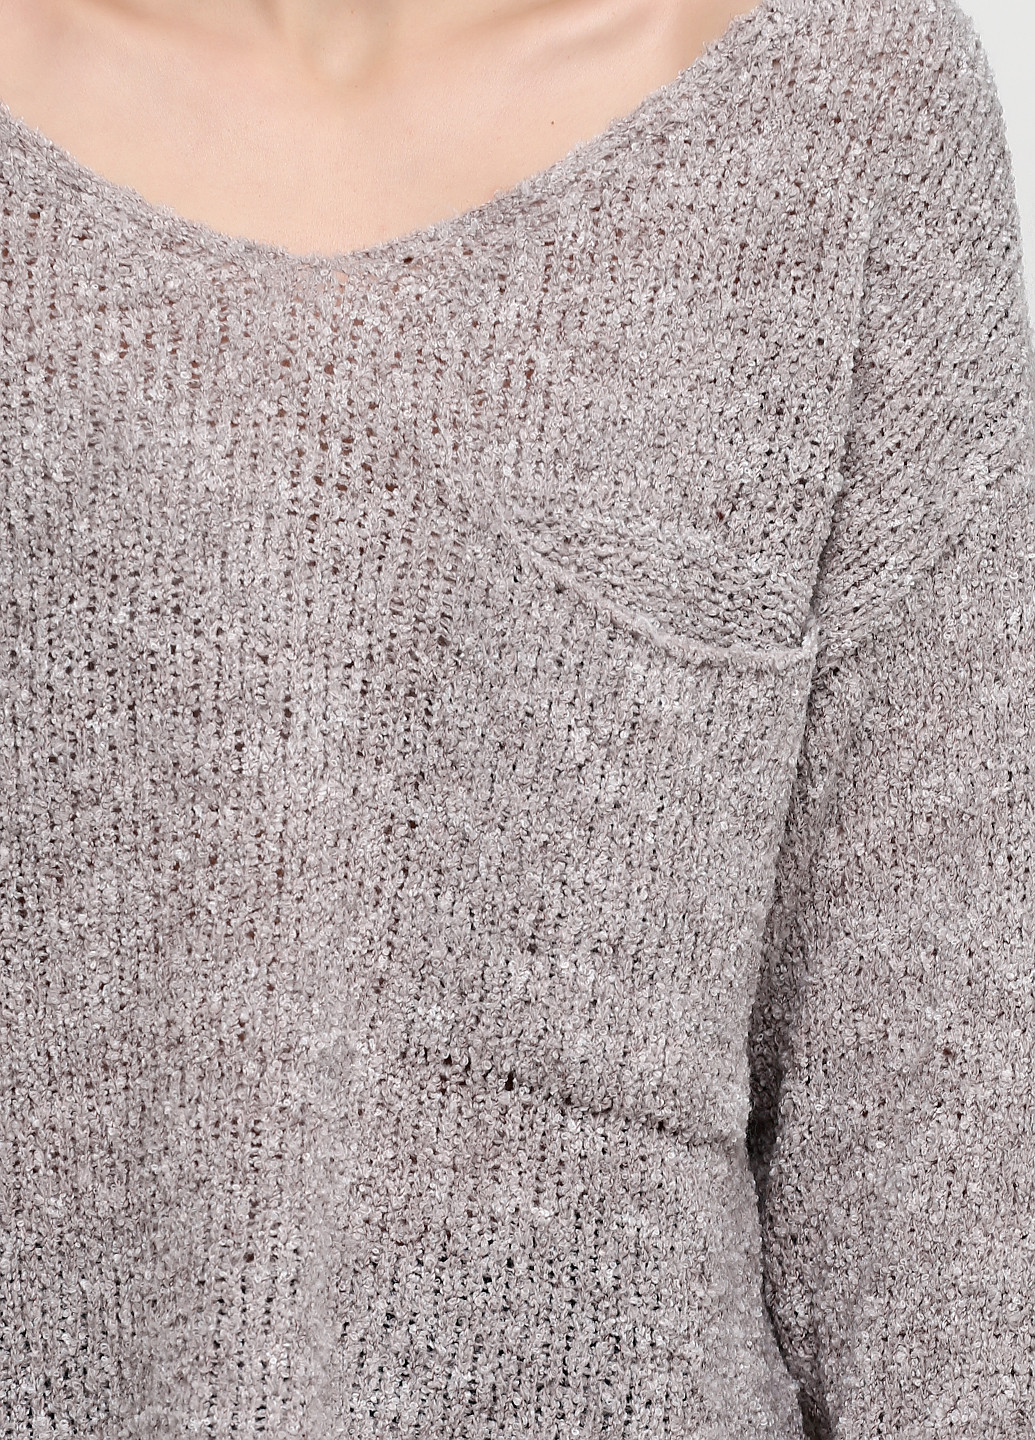 Серый демисезонный пуловер пуловер Made in Italy